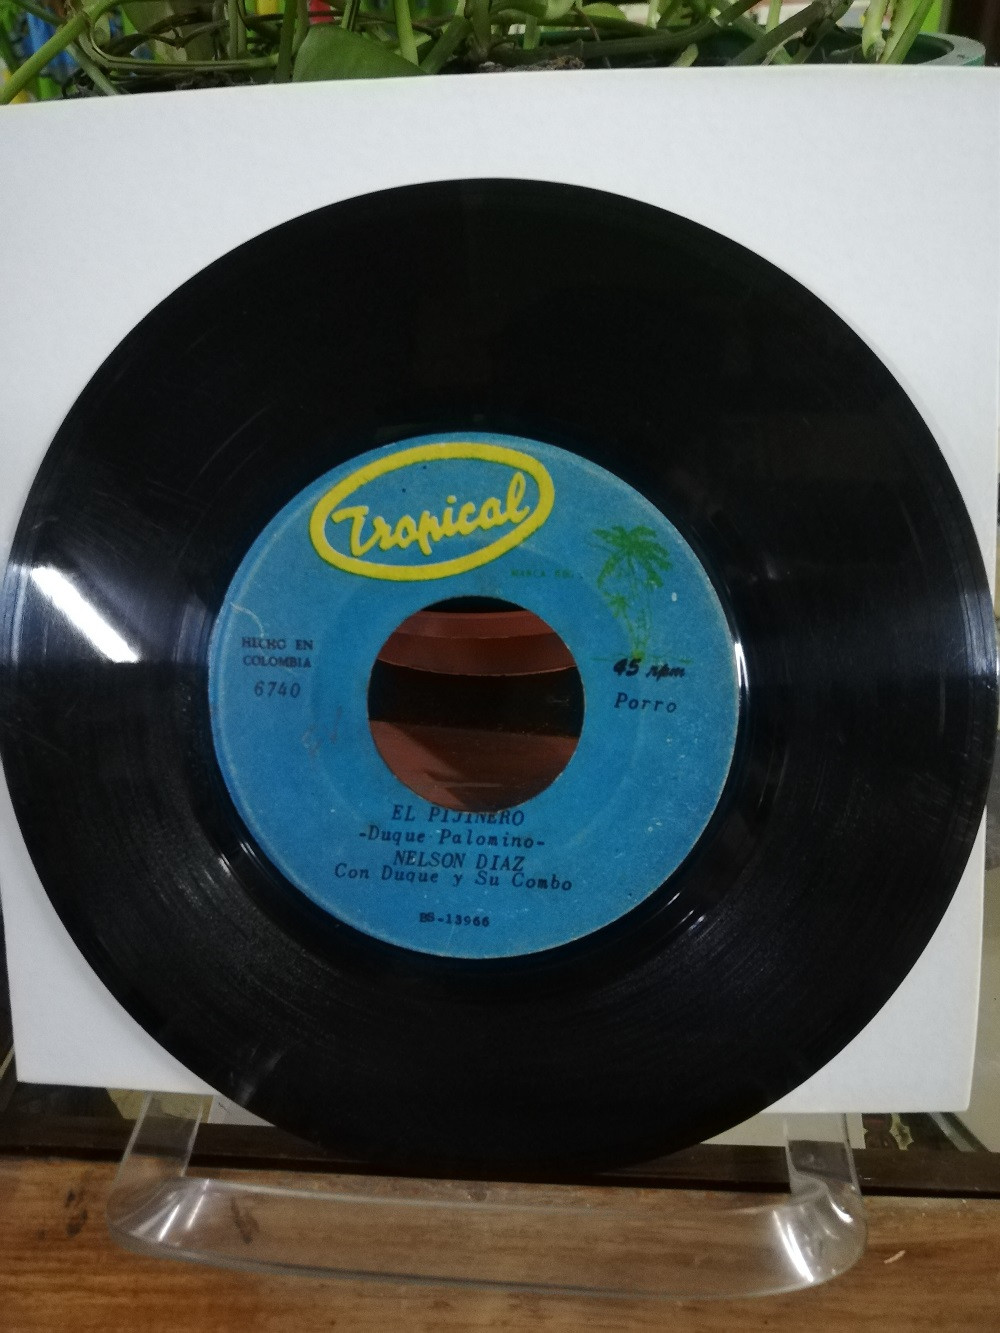 Imagen LP 45 RPM NELSON DIAZ CON DUQUE Y SU COMBO - QUE ME COMA EL TIGRE/EL PIJINERO 3